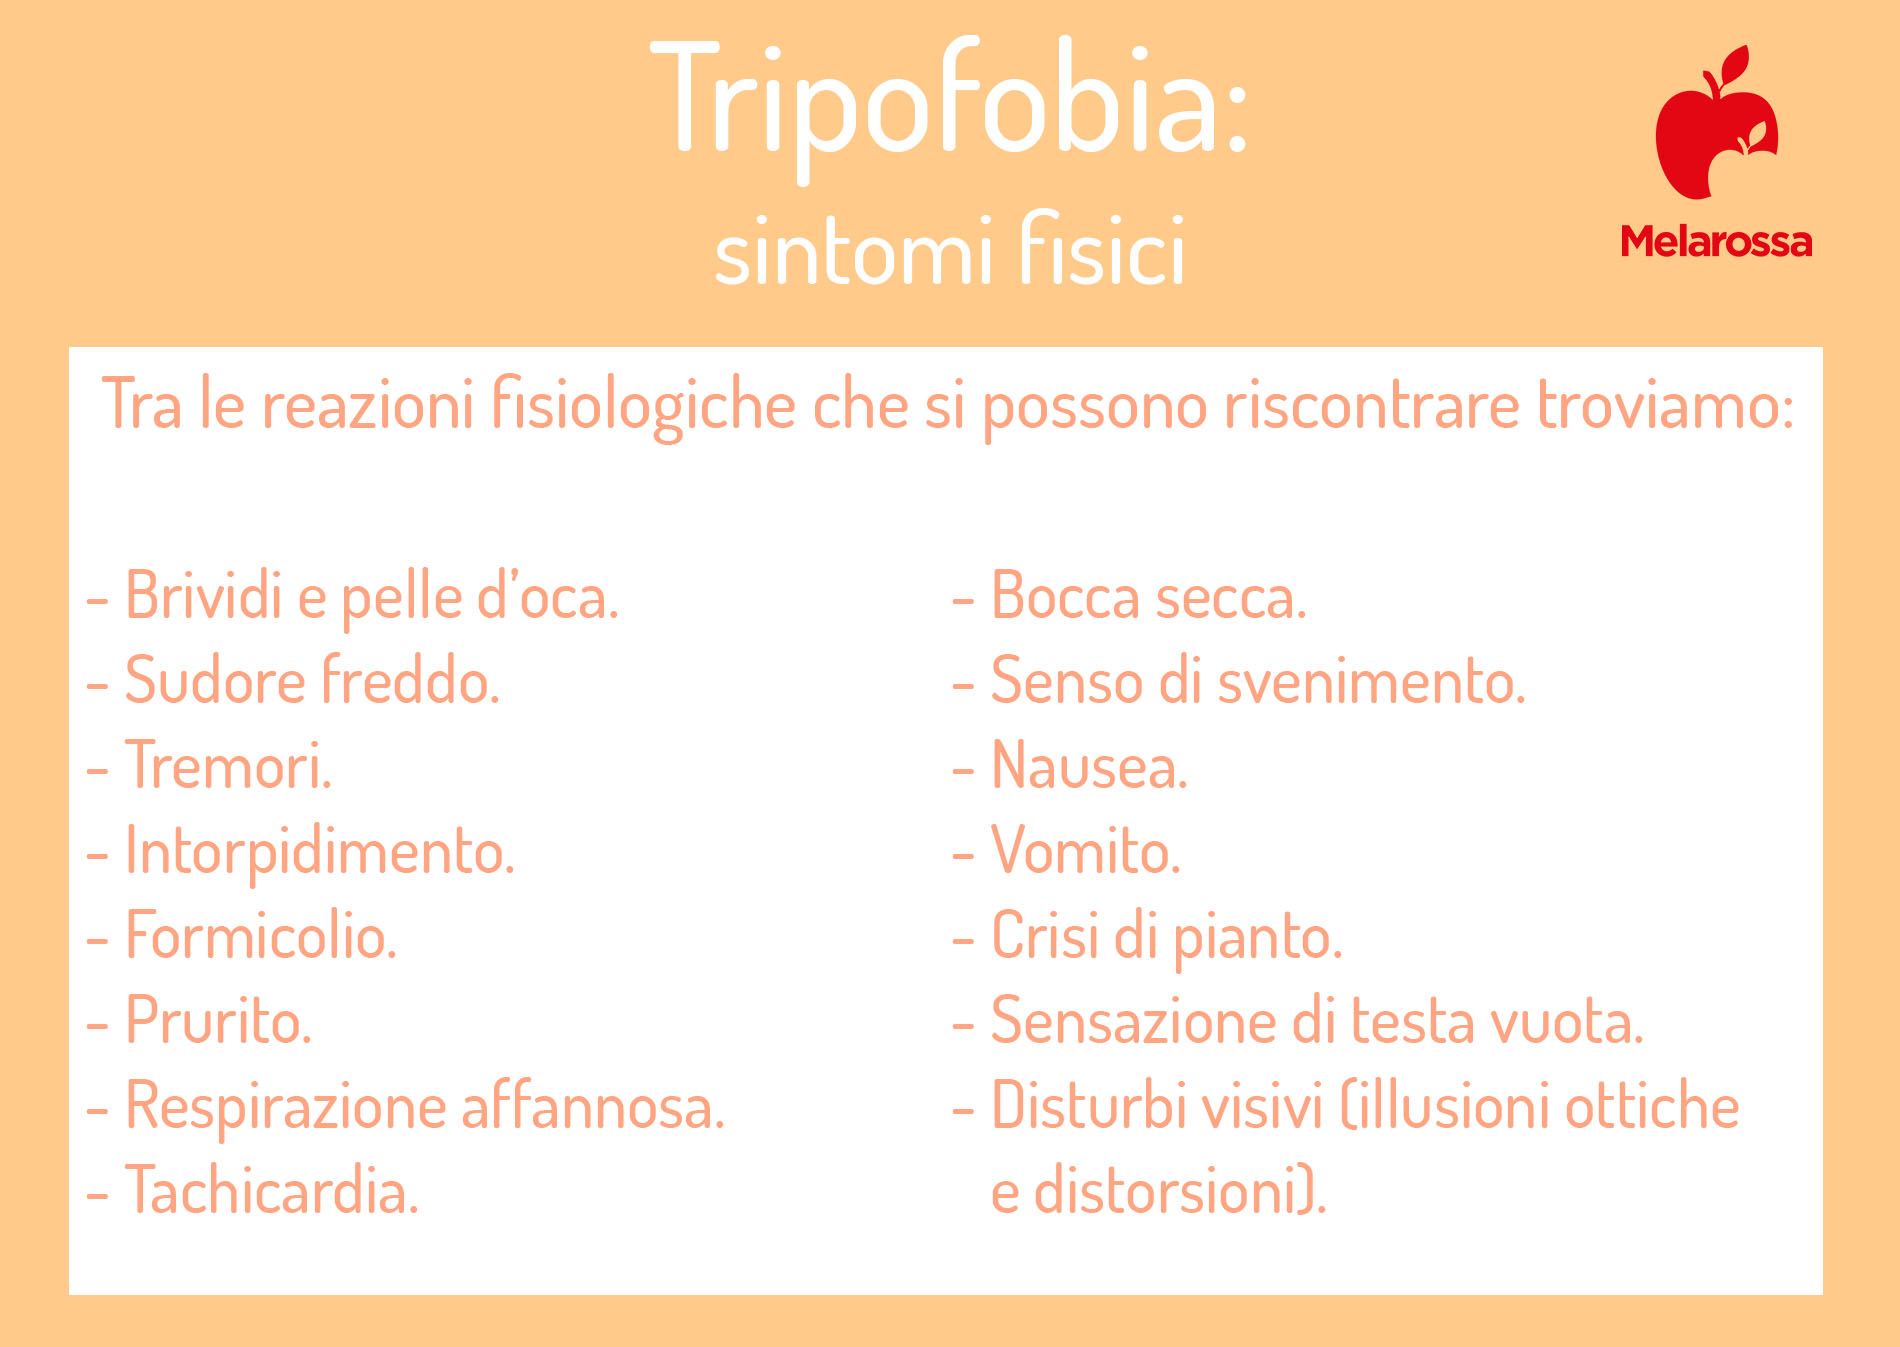 tripofobia: sintomi fisici